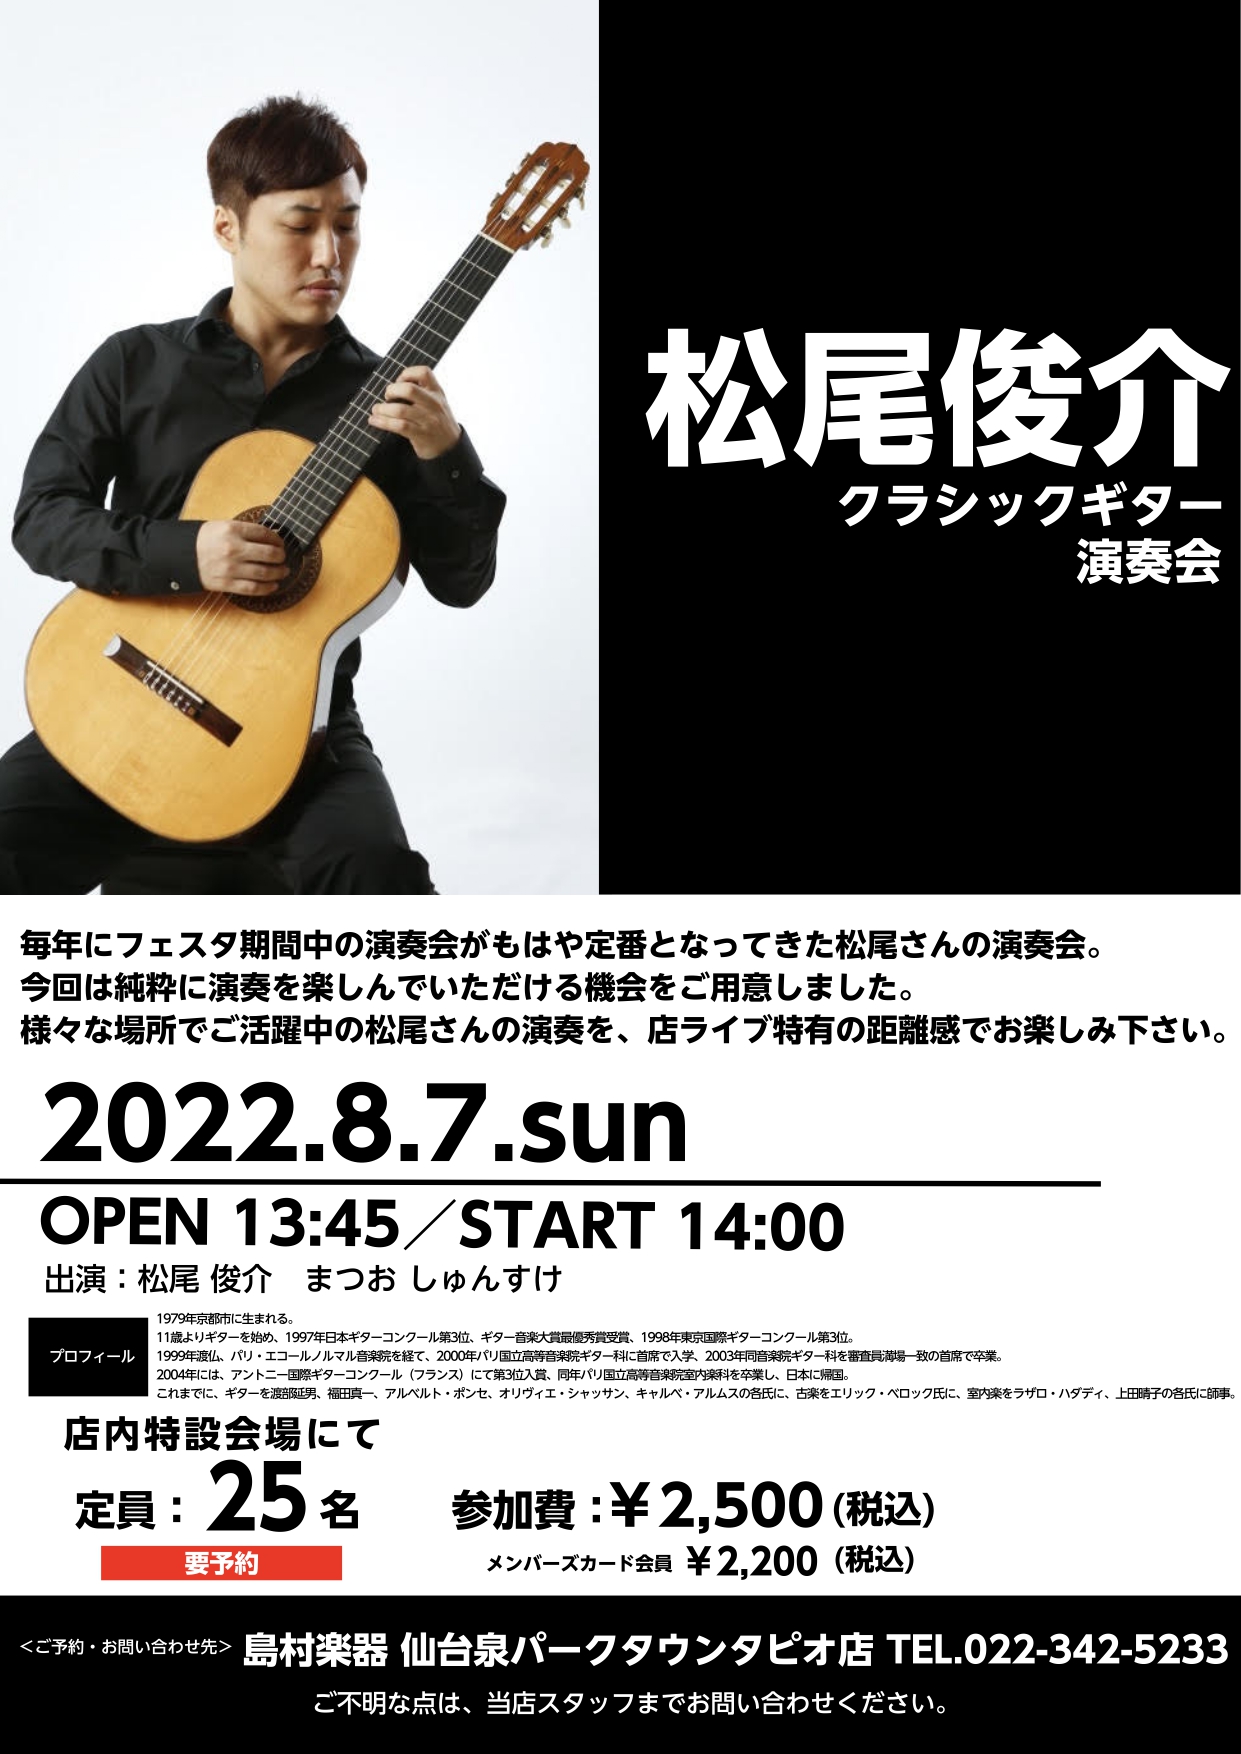 松尾俊介さんの演奏会開催します